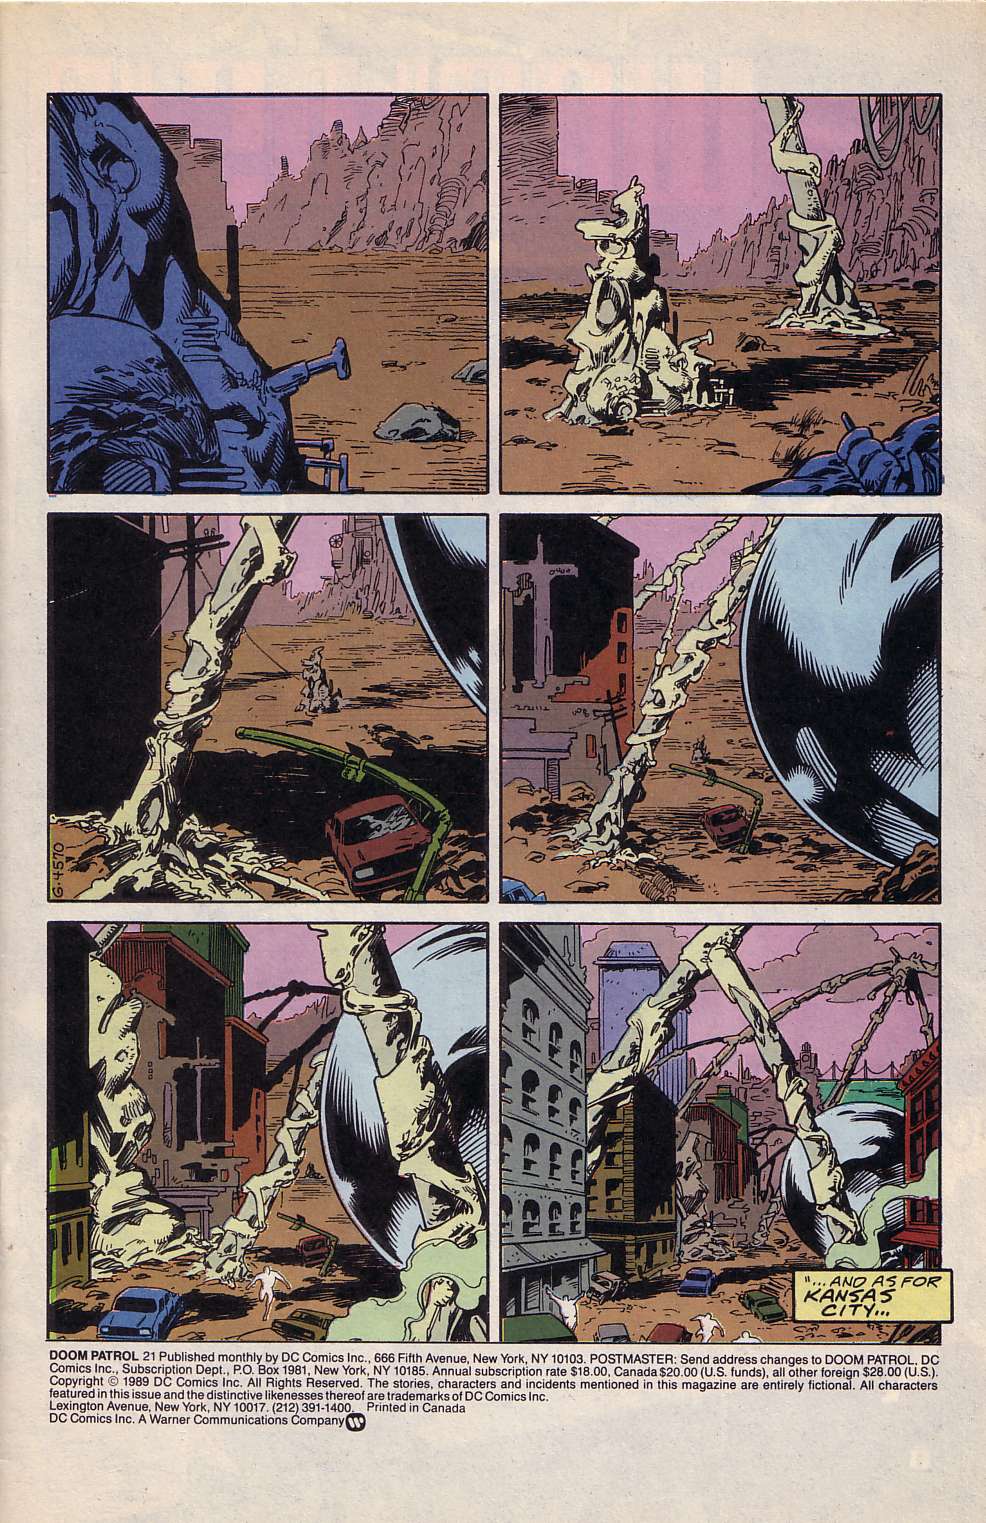 Галерея Doom Patrol — вспоминаем историю одной из самых необычных команд в комиксах DC - 5 фото